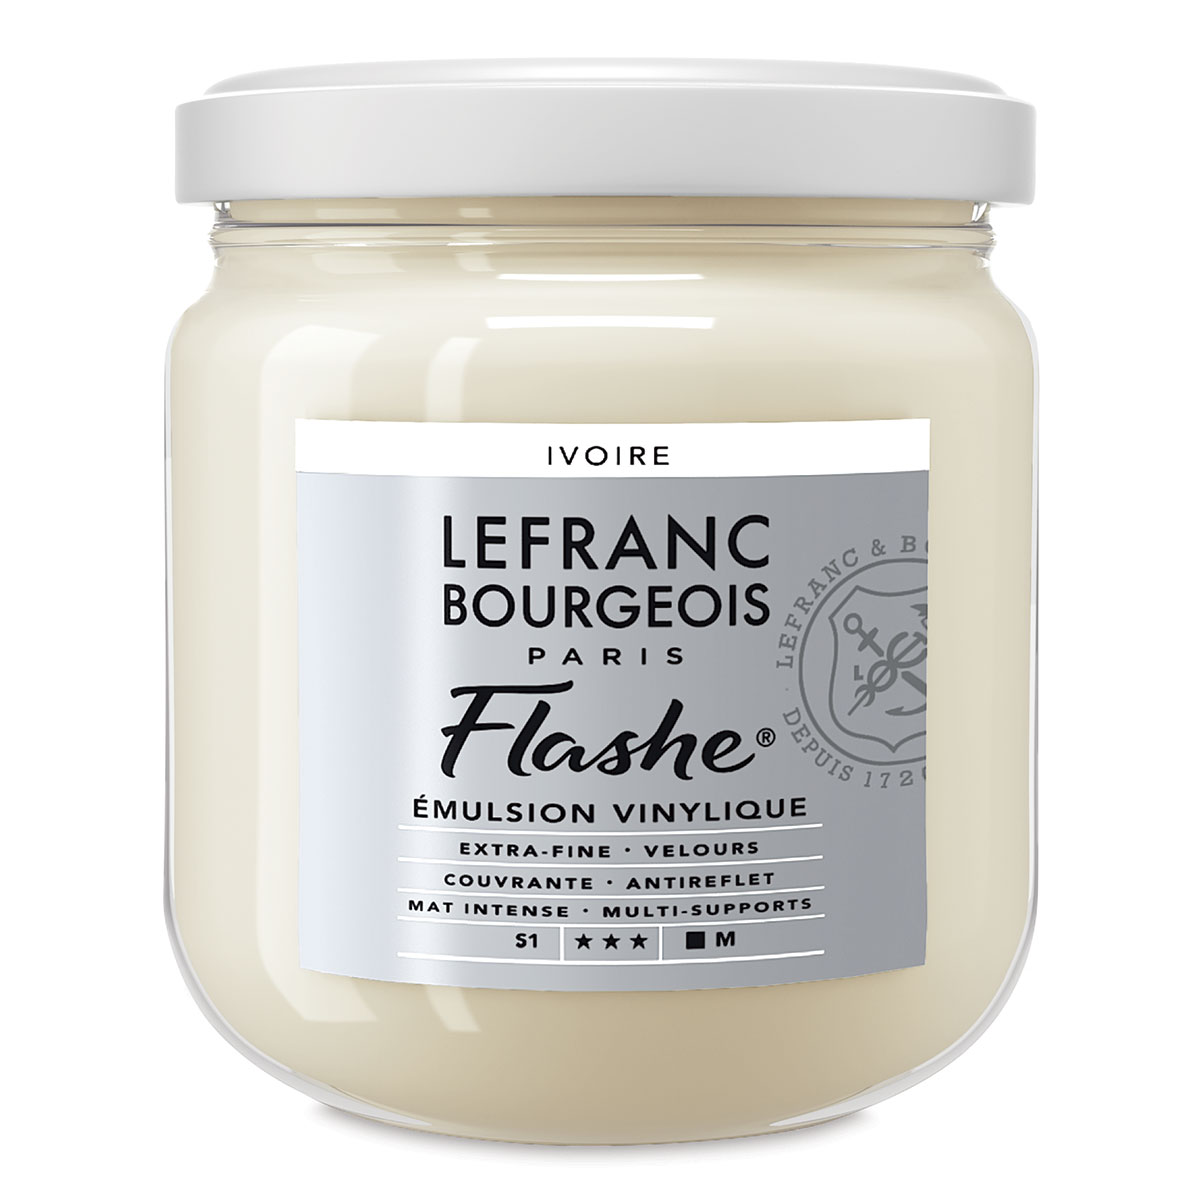 Lefranc &#x26; Bourgeois Flashe Vinyl Paint -  Ivory, 400 ml jar